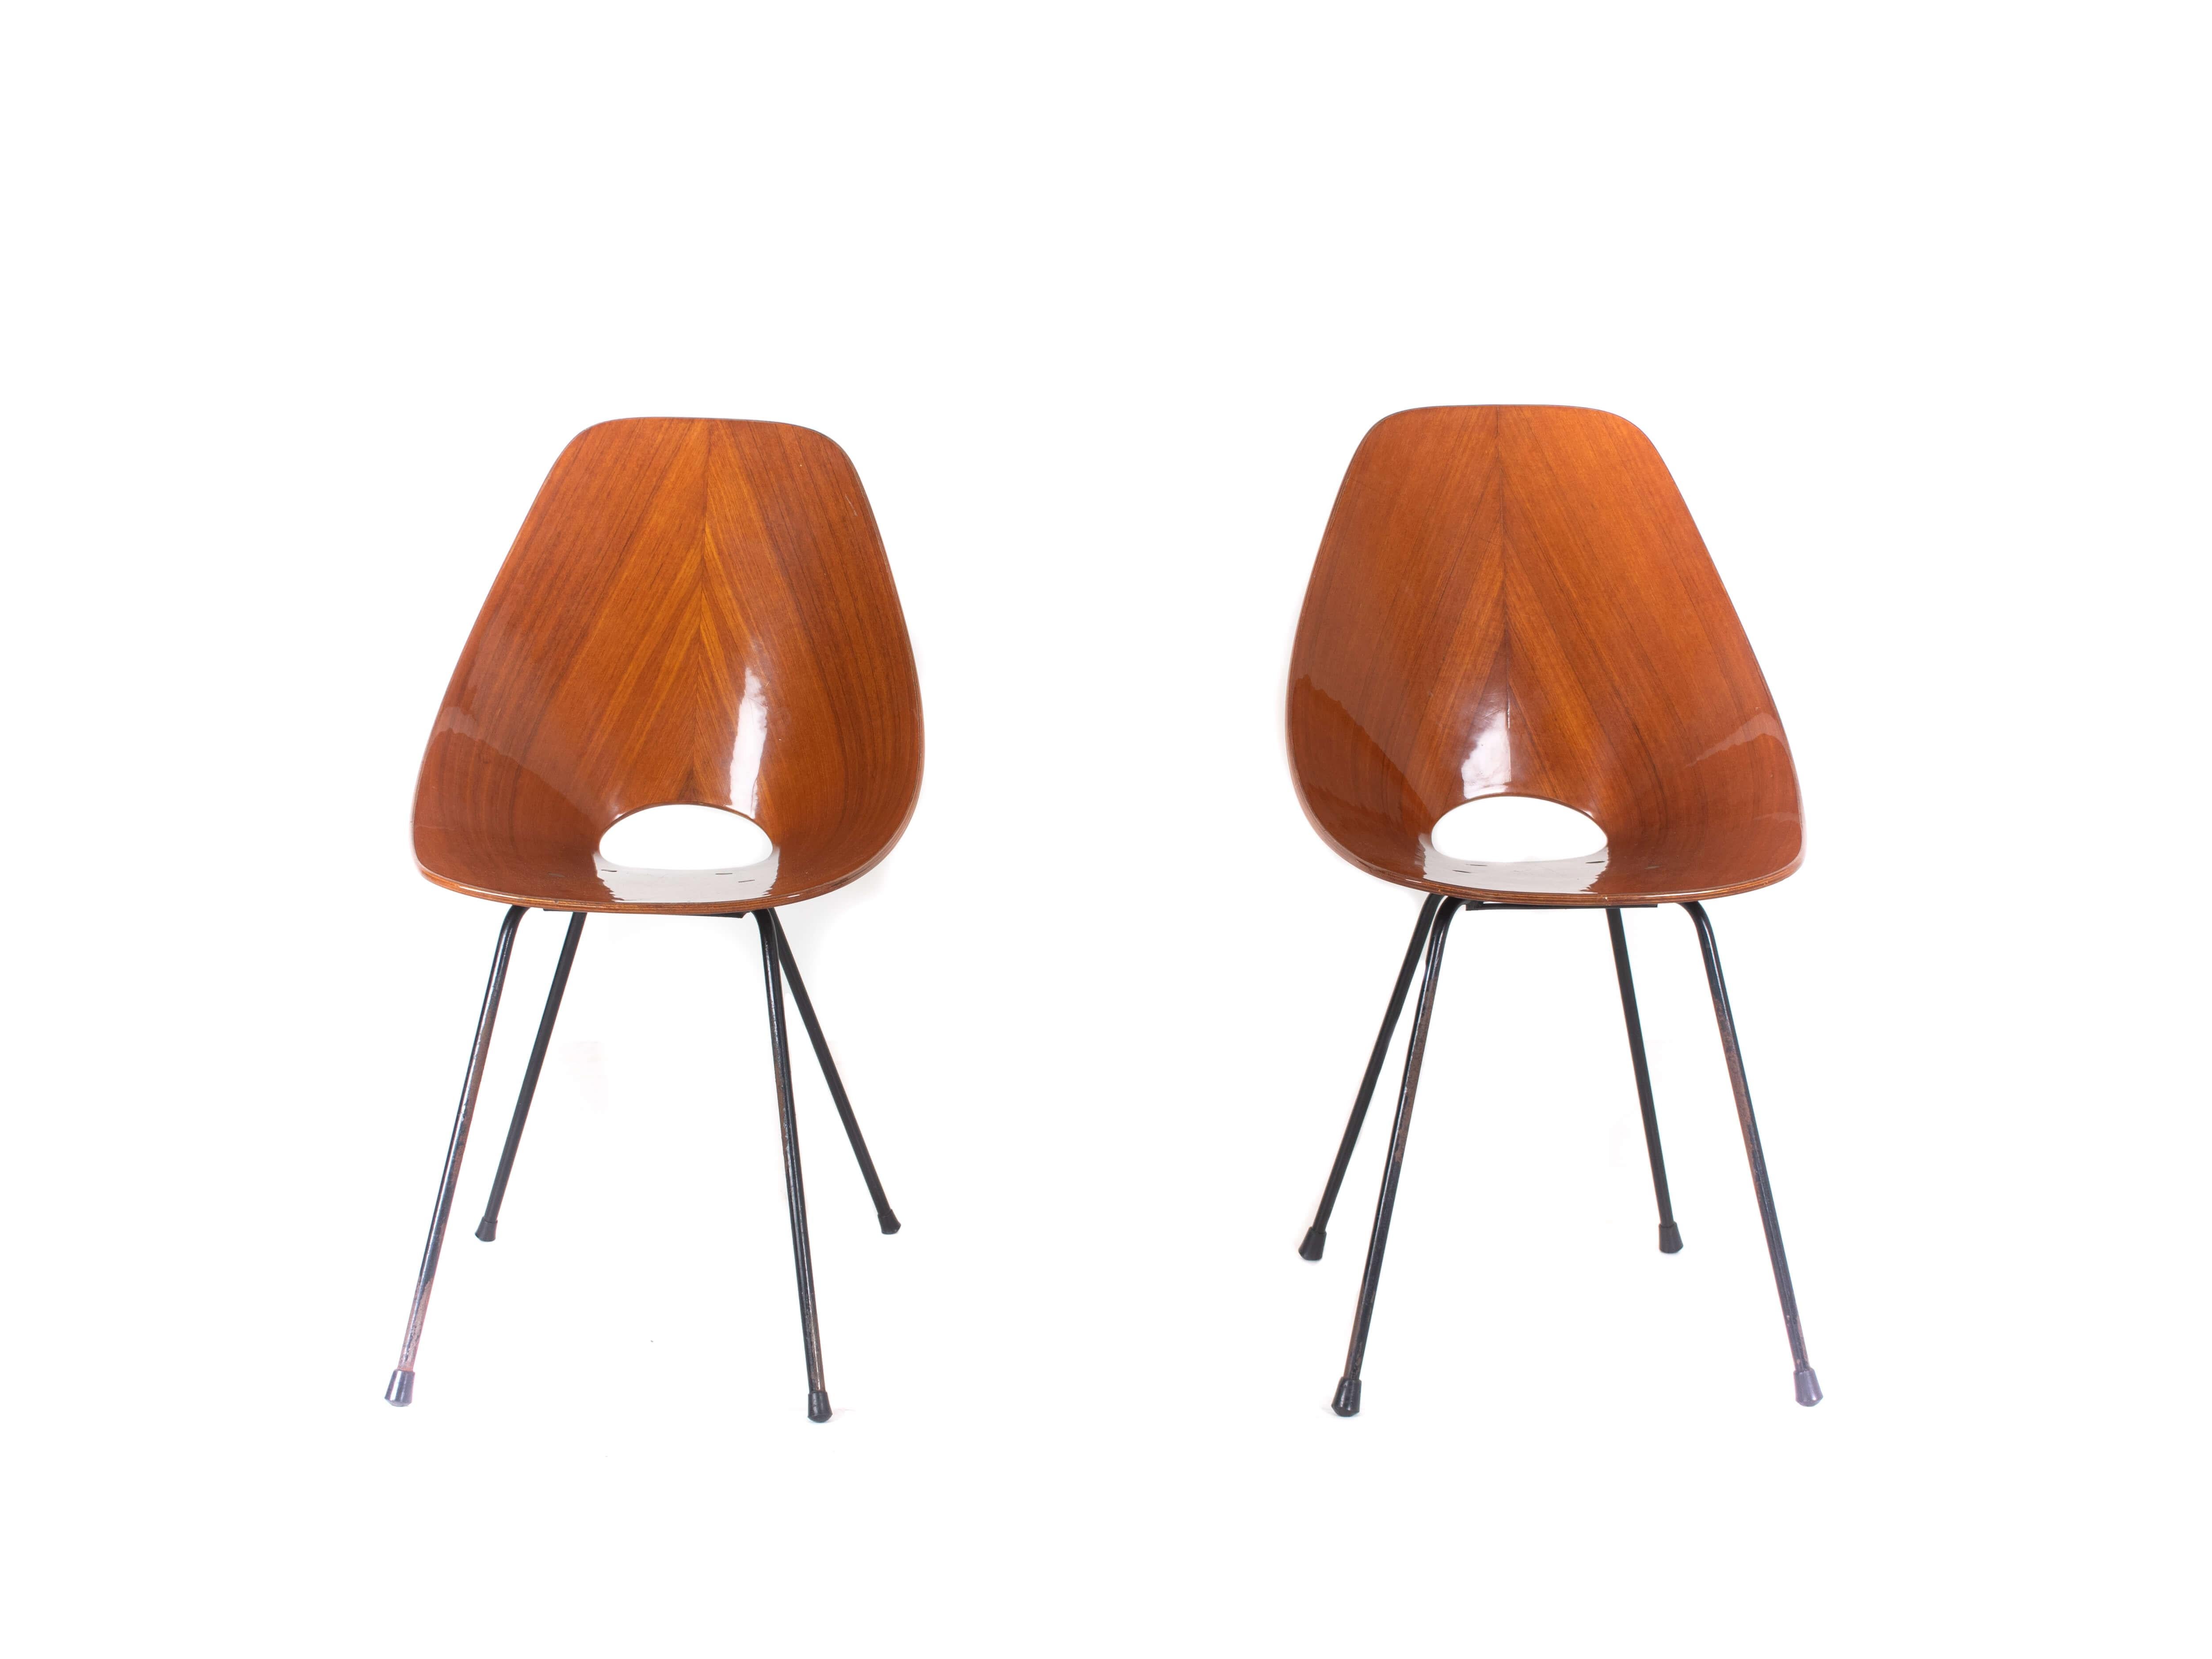 Satz von zwei Medea-Stühlen von Vittorio Nobili für Fratelli Tagliabue, Italien 1950er Jahre. Diese kultigen modernen italienischen Stühle haben ein großartiges Design. Emaillierte Eisenstangen bilden das Gestell dieses Stuhls. Die Sitzgruppe ist